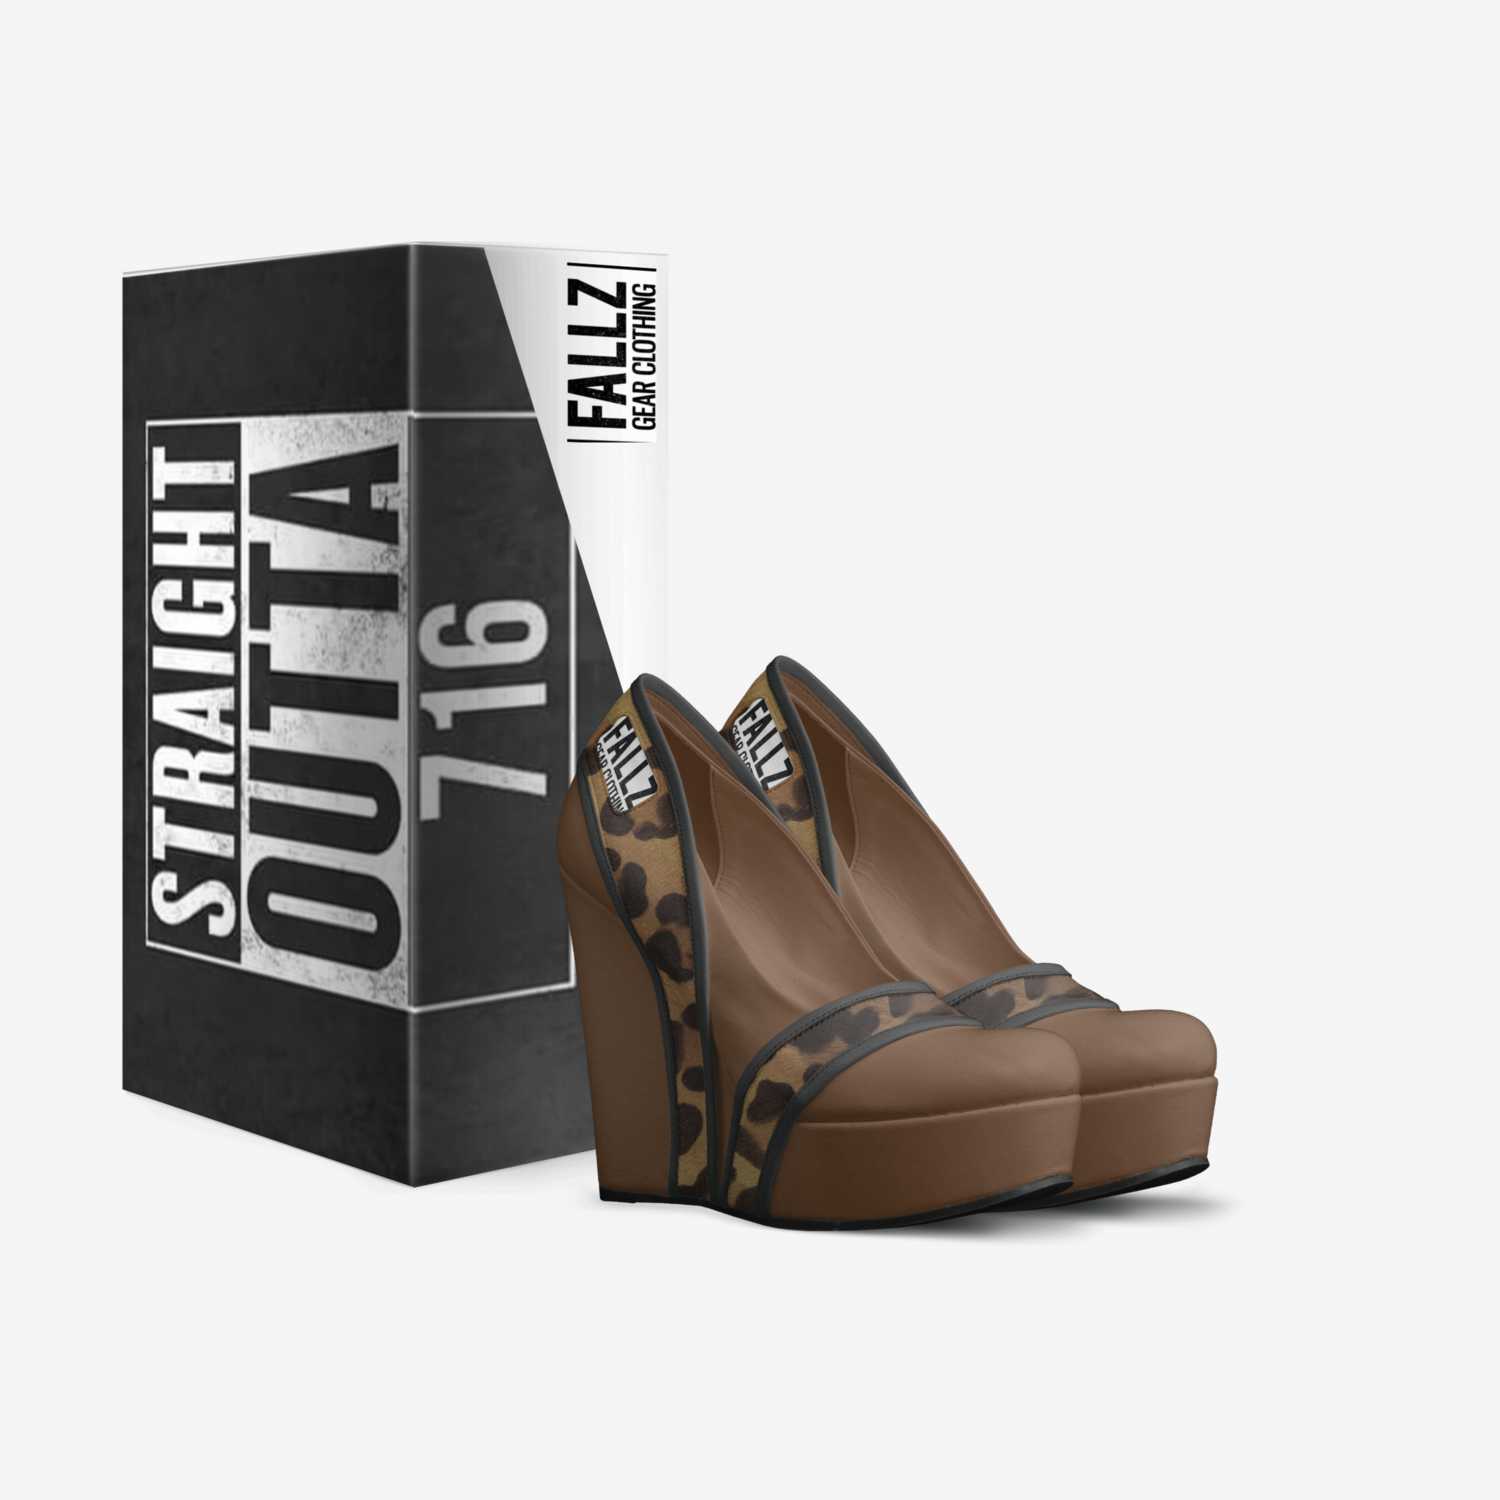 Fallz Gear: Spots custom made in Italy shoes by Fallz Gear | Box view